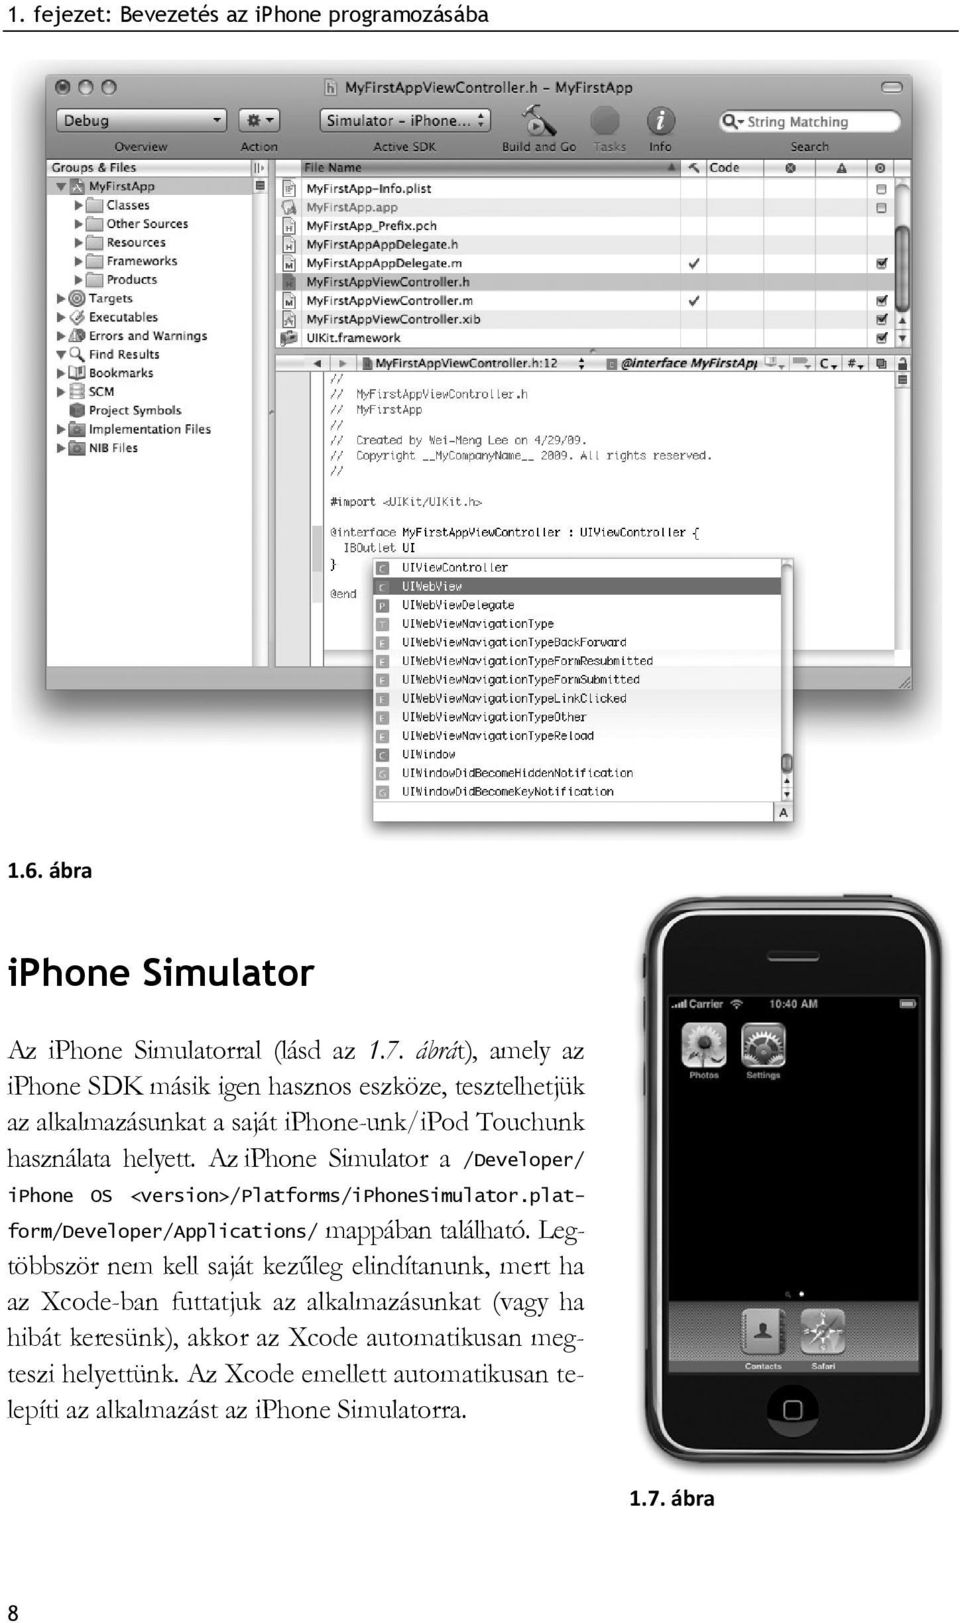 Az iphone Simulator a /Developer/ iphone OS <version>/platforms/iphonesimulator.platform/developer/applications/ mappában található.